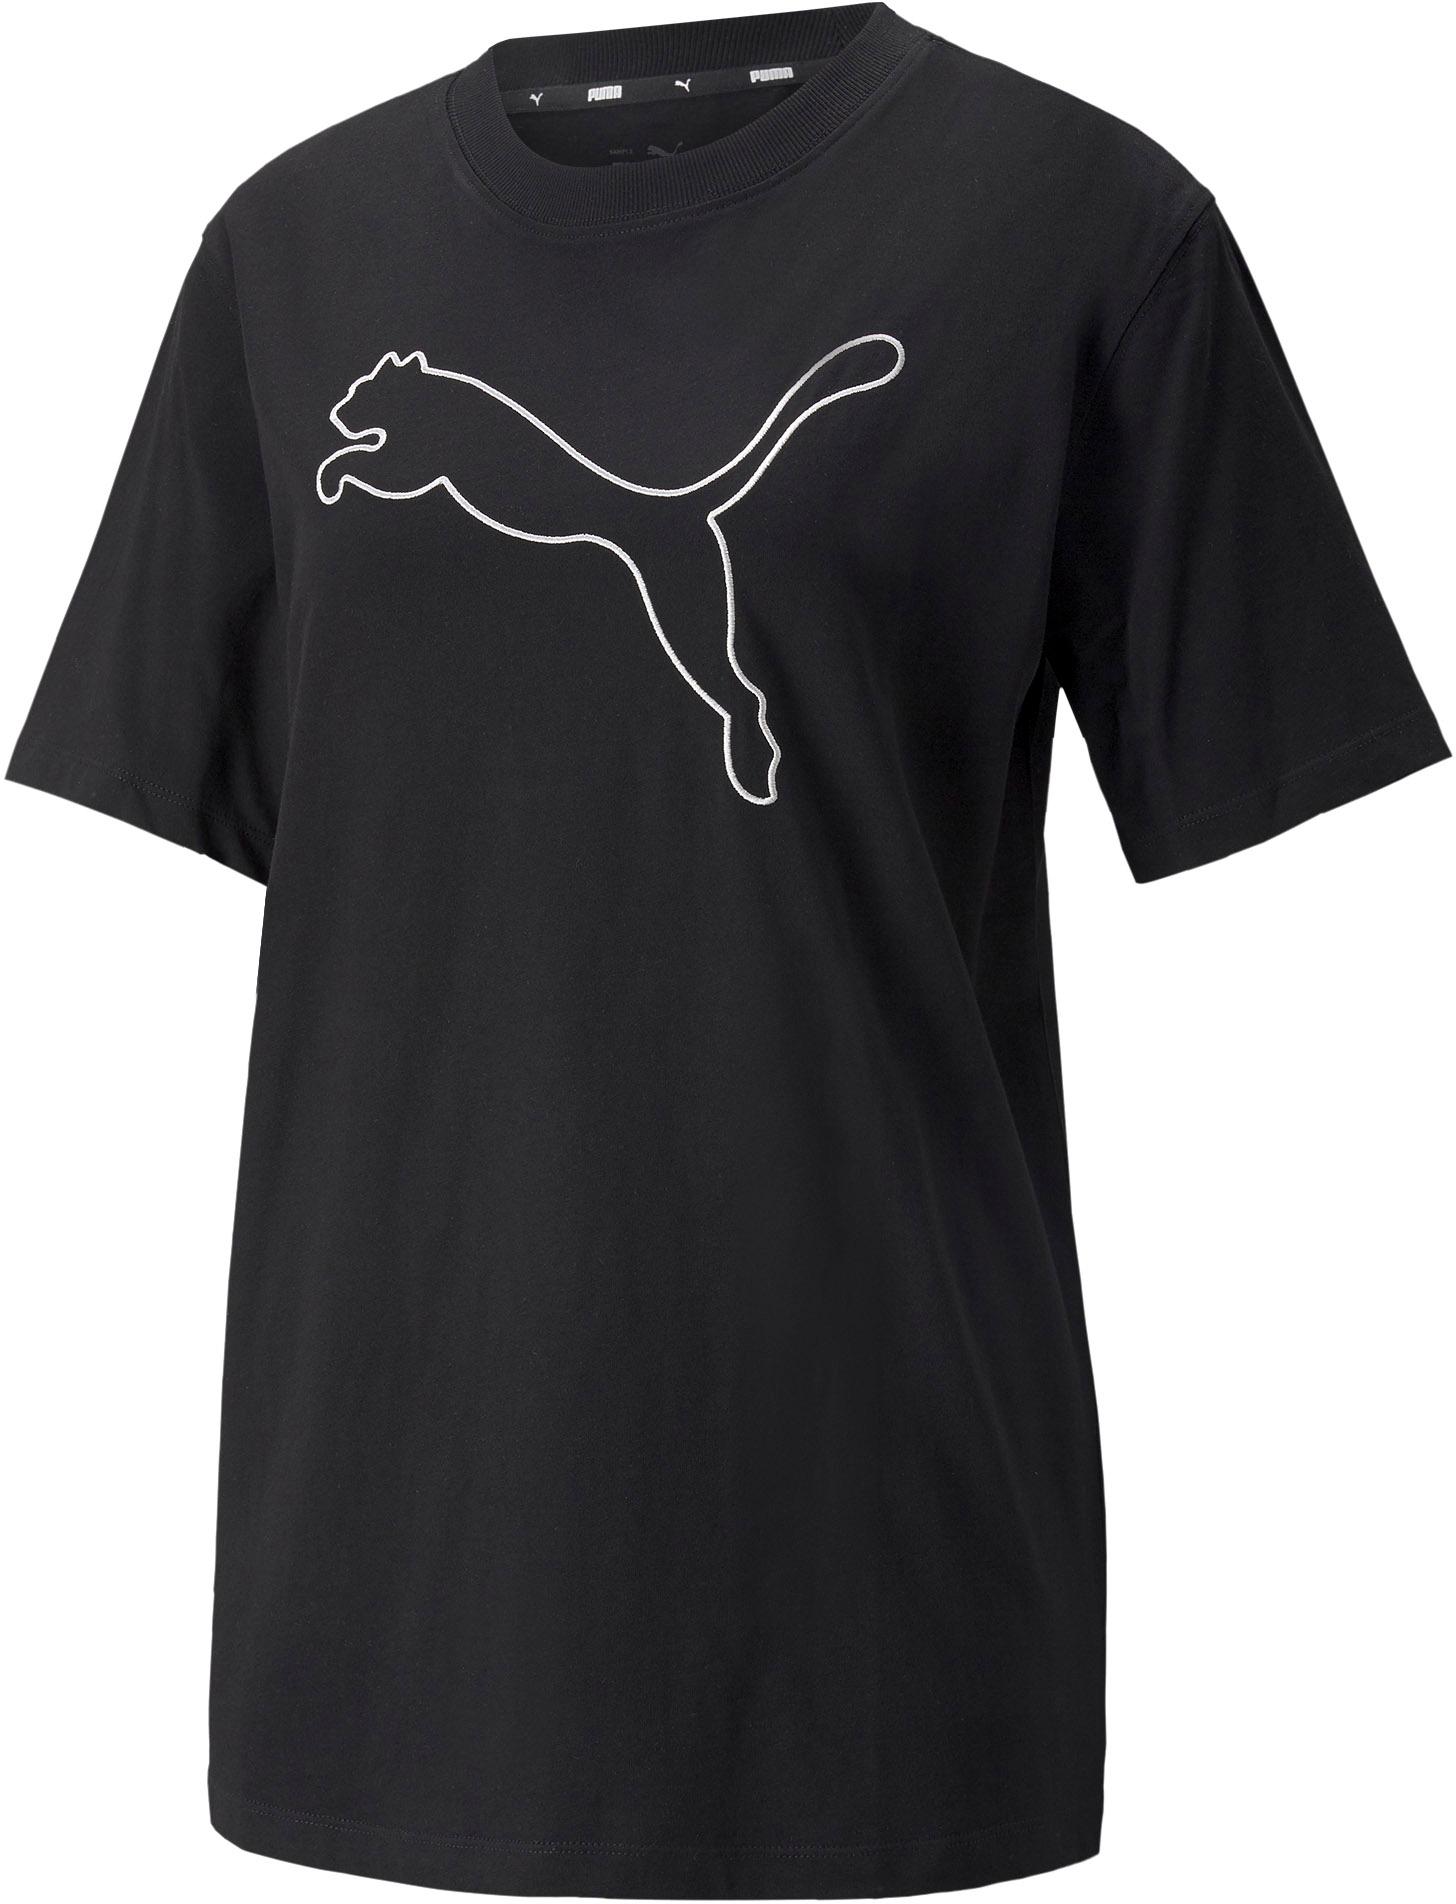 PUMA HER T-Shirt Damen puma black im Online Shop von SportScheck kaufen